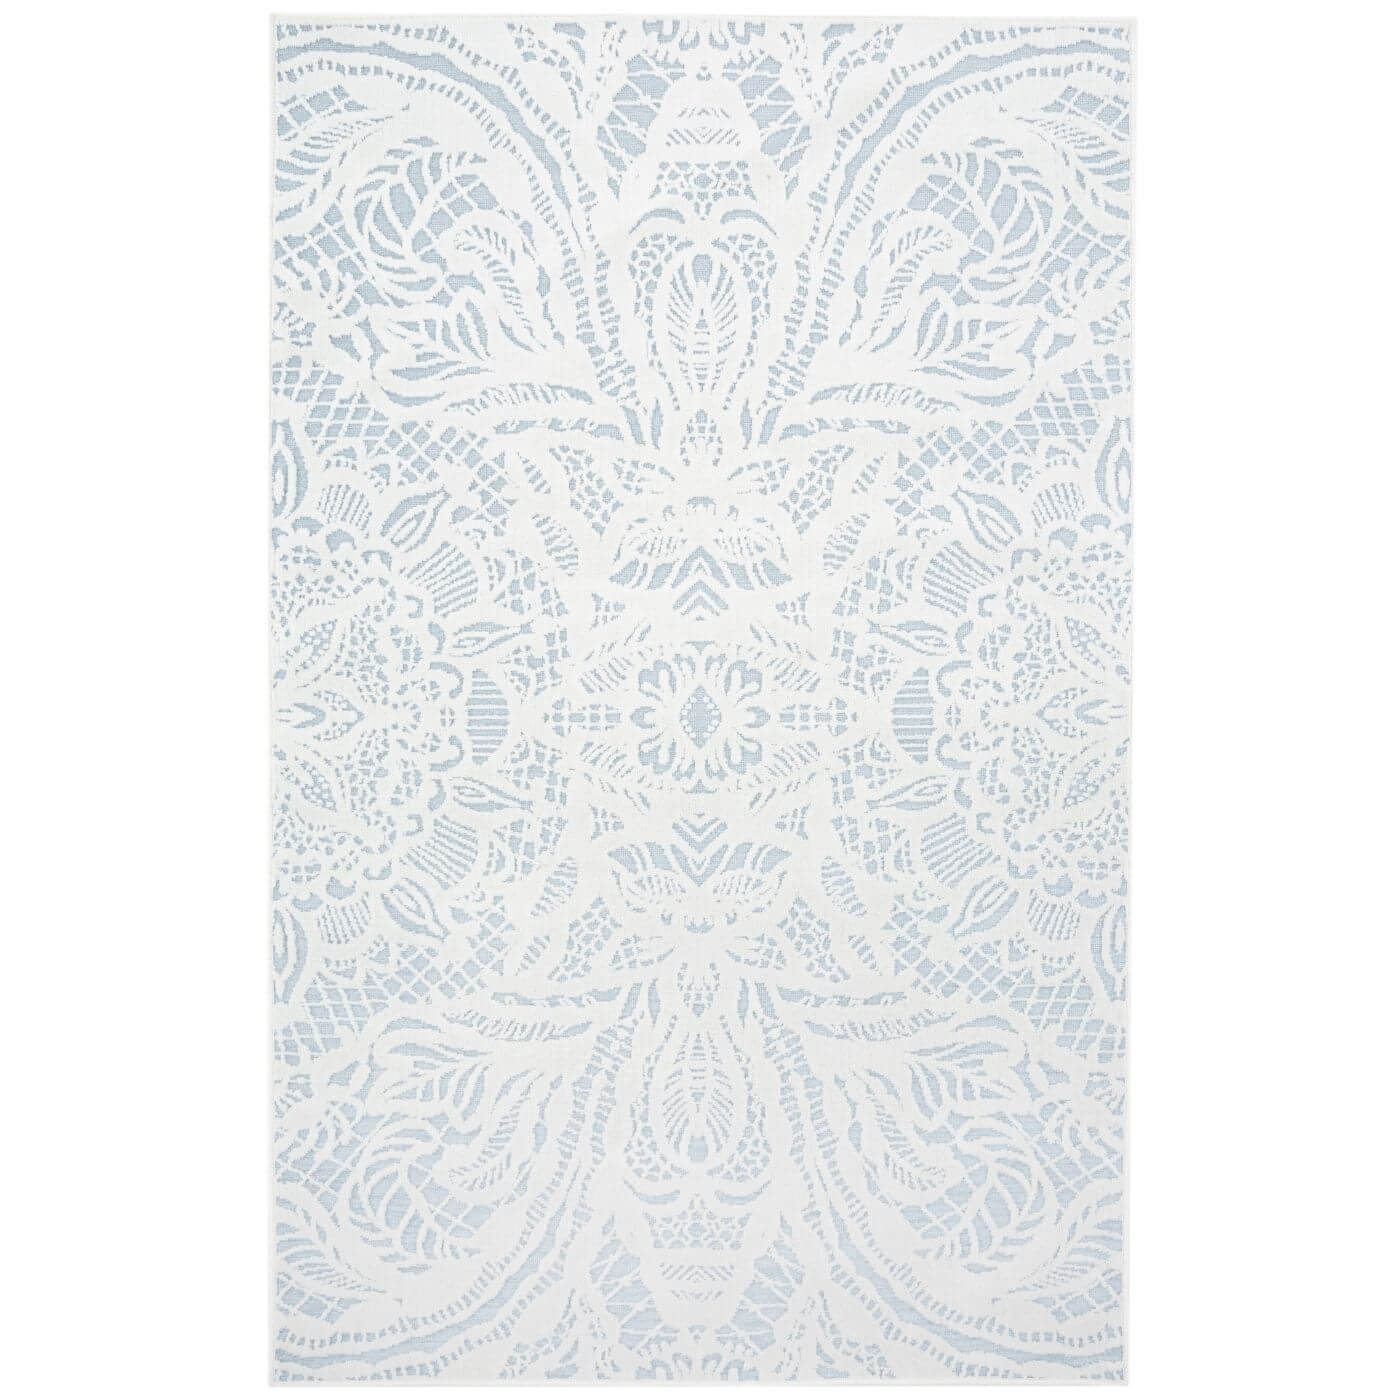 Dywanik jasny do sypialni ALEKSANDRA. Dekoracyjny jasno niebieski dywanik w biały wzór 3d jak koronka. Cienki mały dywanik do sypialni widoczny w całości